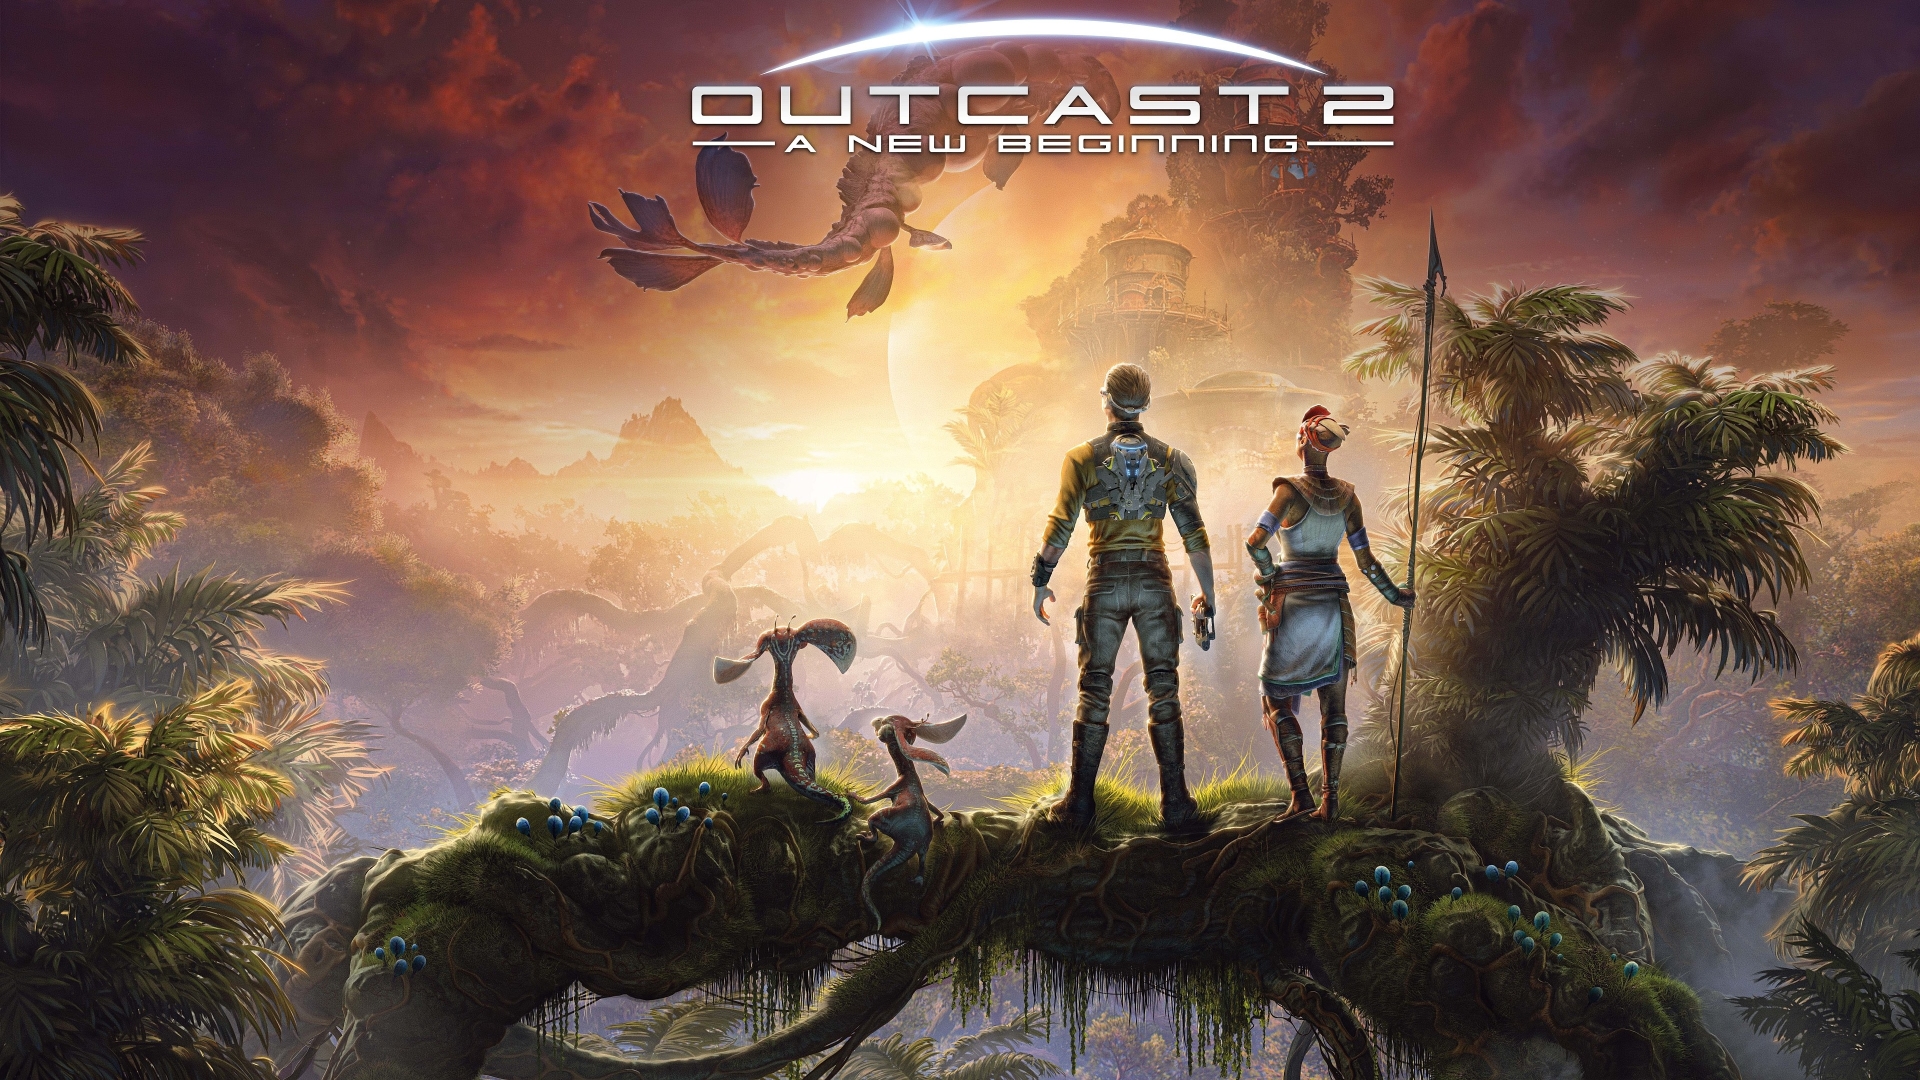 Outcast – A New Beginning – Recenzia (Hra)